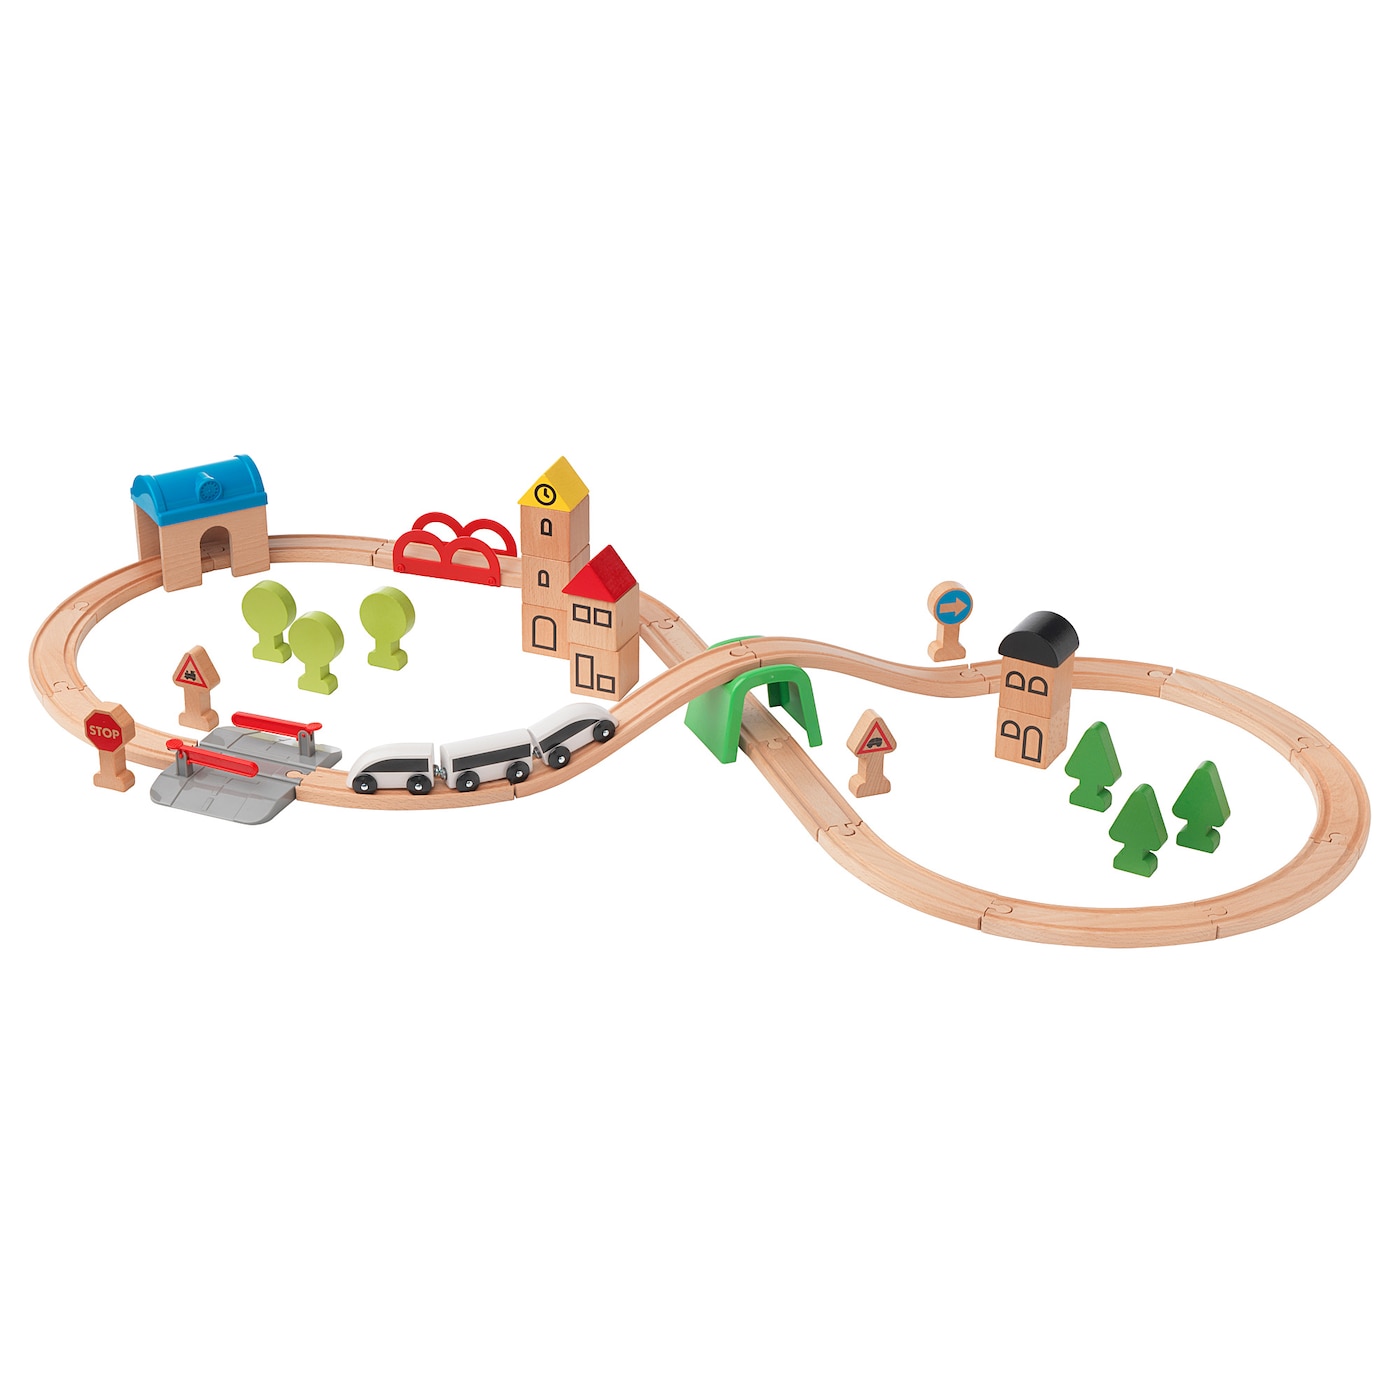 LILLABO Eisenbahn-Set mit Schienen, 45-tlg.  - Spielzeug - Babyausstattung & Kinderzimmerzubehör Ideen für dein Zuhause von Home Trends. Babyausstattung & Kinderzimmerzubehör Trends von Social Media Influencer für dein Skandi Zuhause.